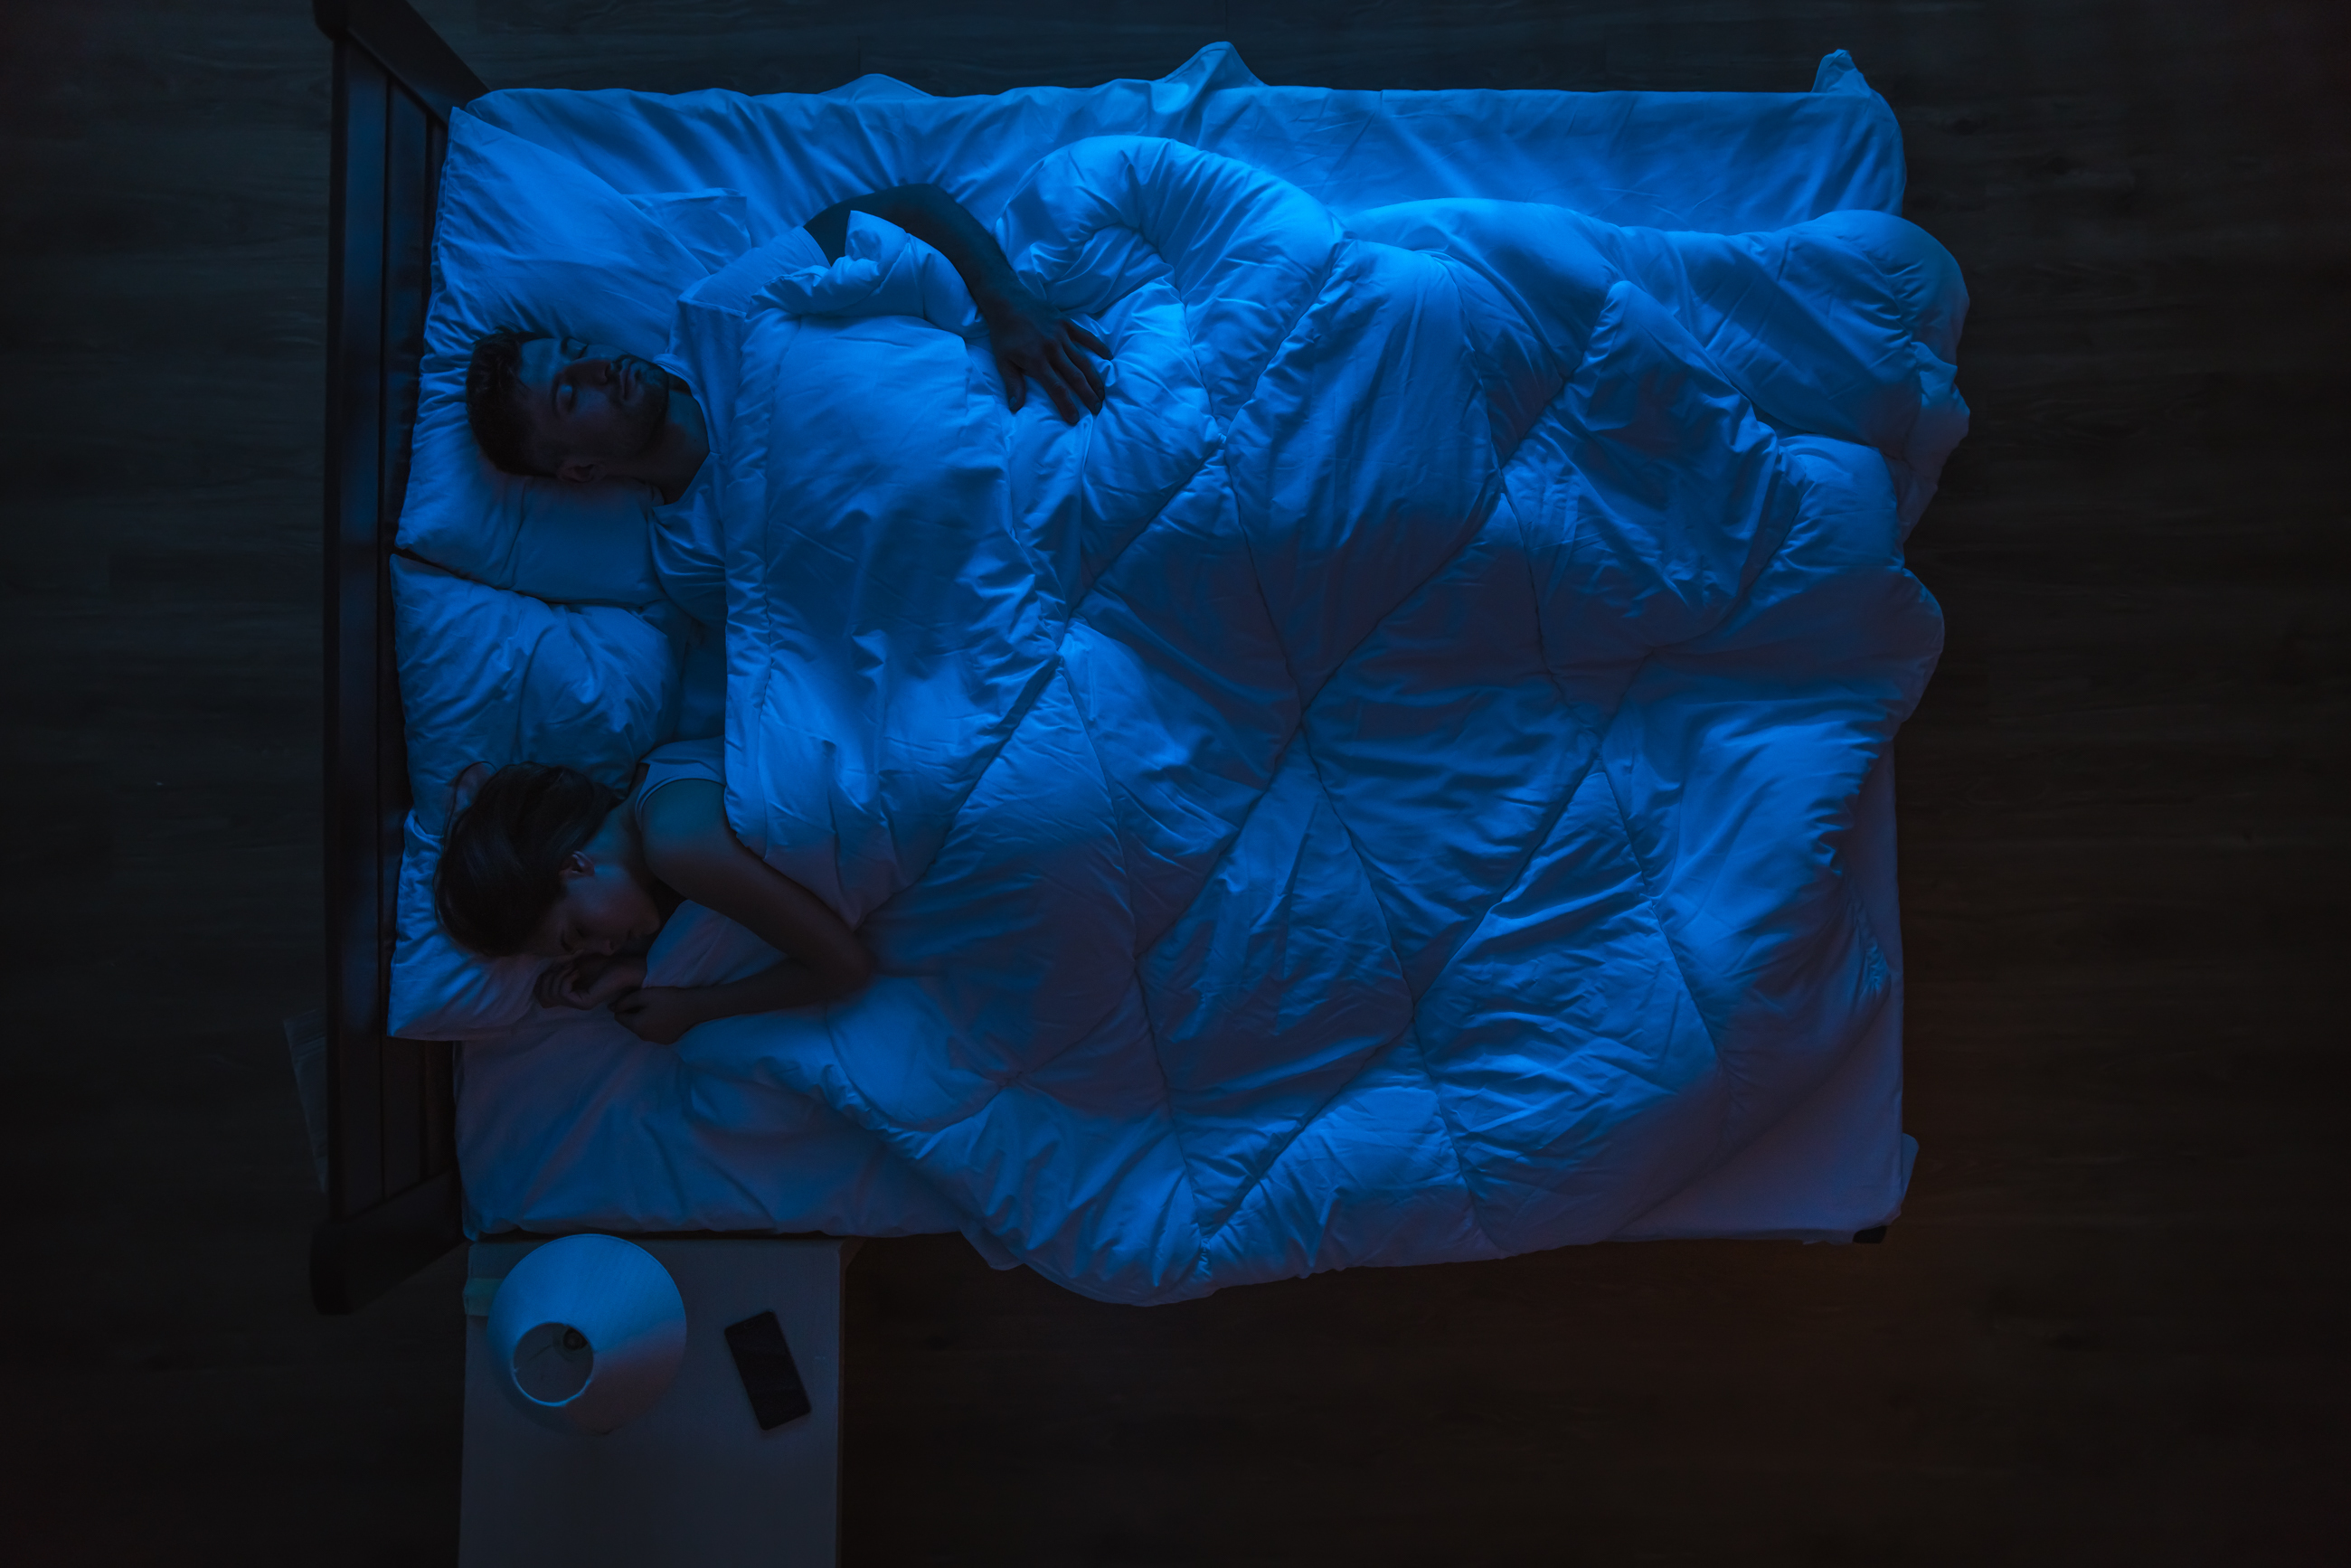 Pareja durmiendo en una cama. Tarde noche. | Fuente: Shutterstock